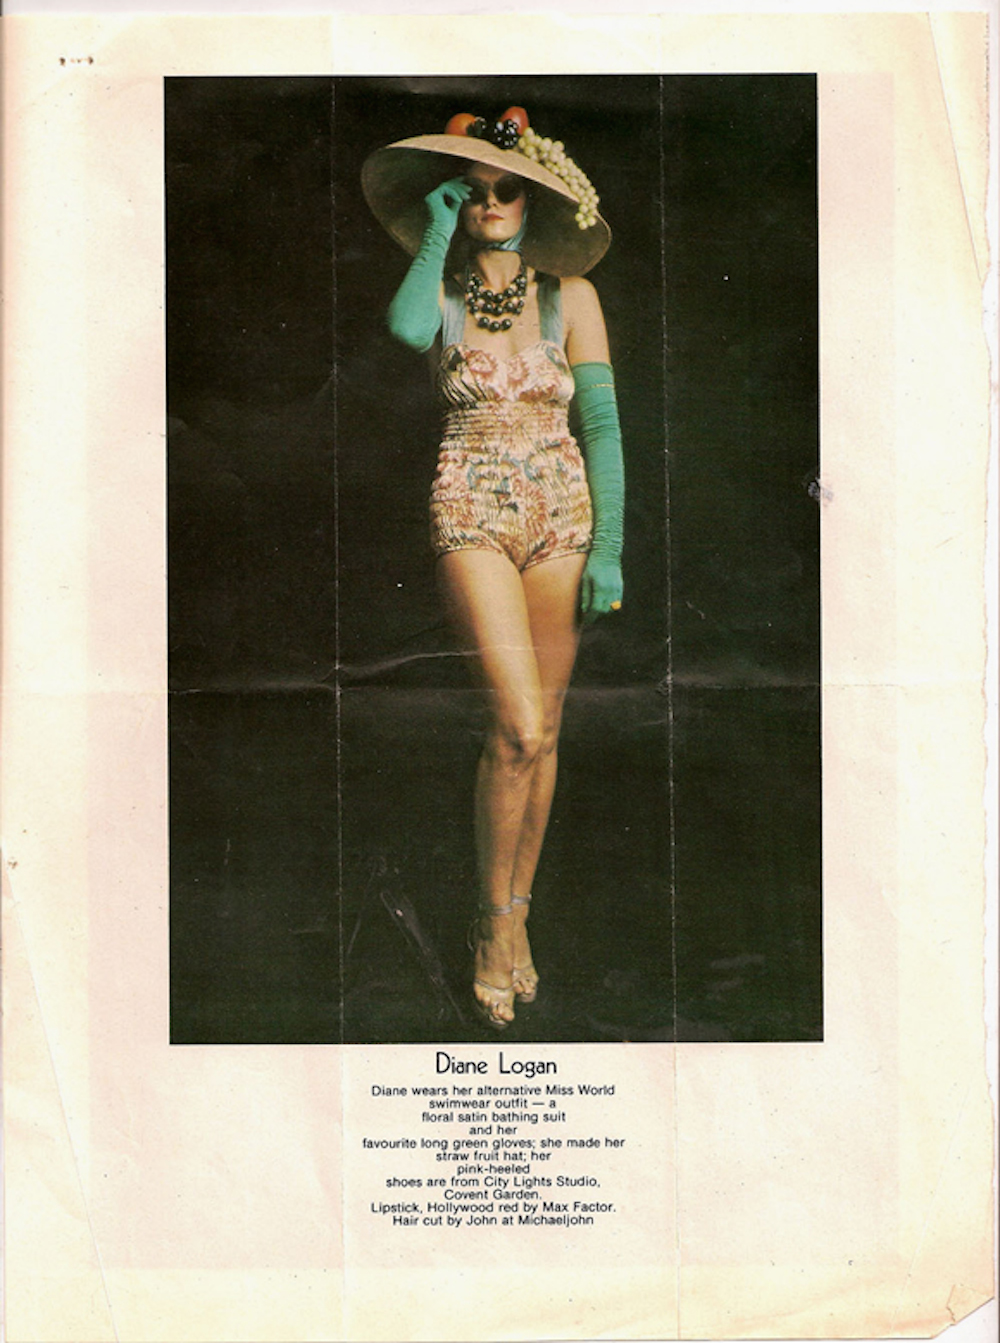 Diane LoganAlternative Miss World 1973